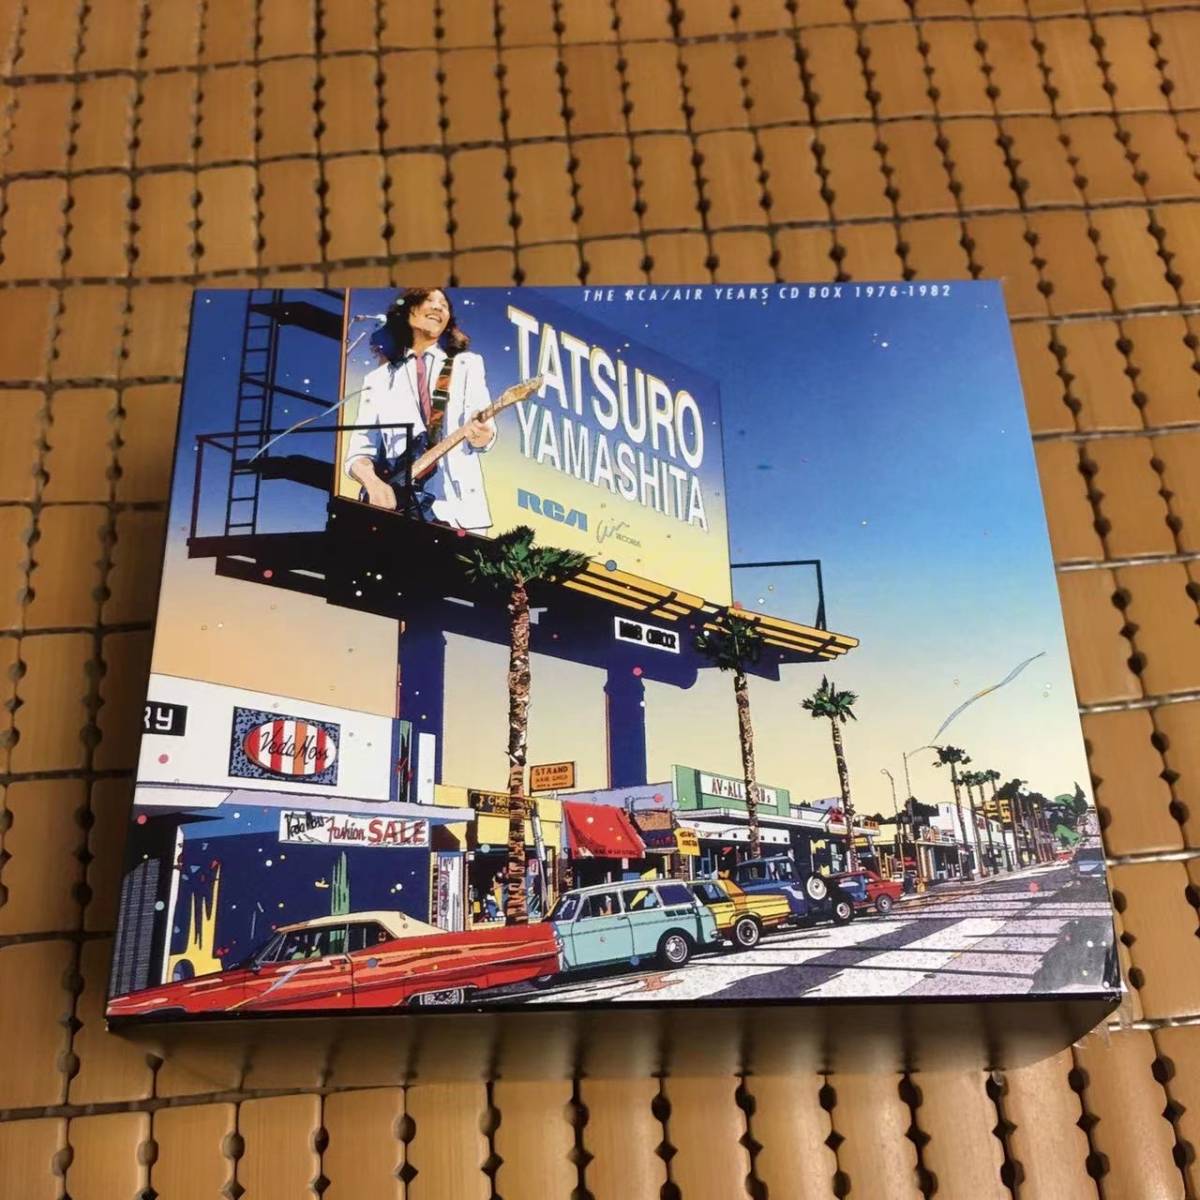 山下達郎 『THE RCA/AIR YEARS CD BOX 1976-1982』 8タイトル9枚組CD 特典盤/帯付 TATSURO YAMASHITA の画像1